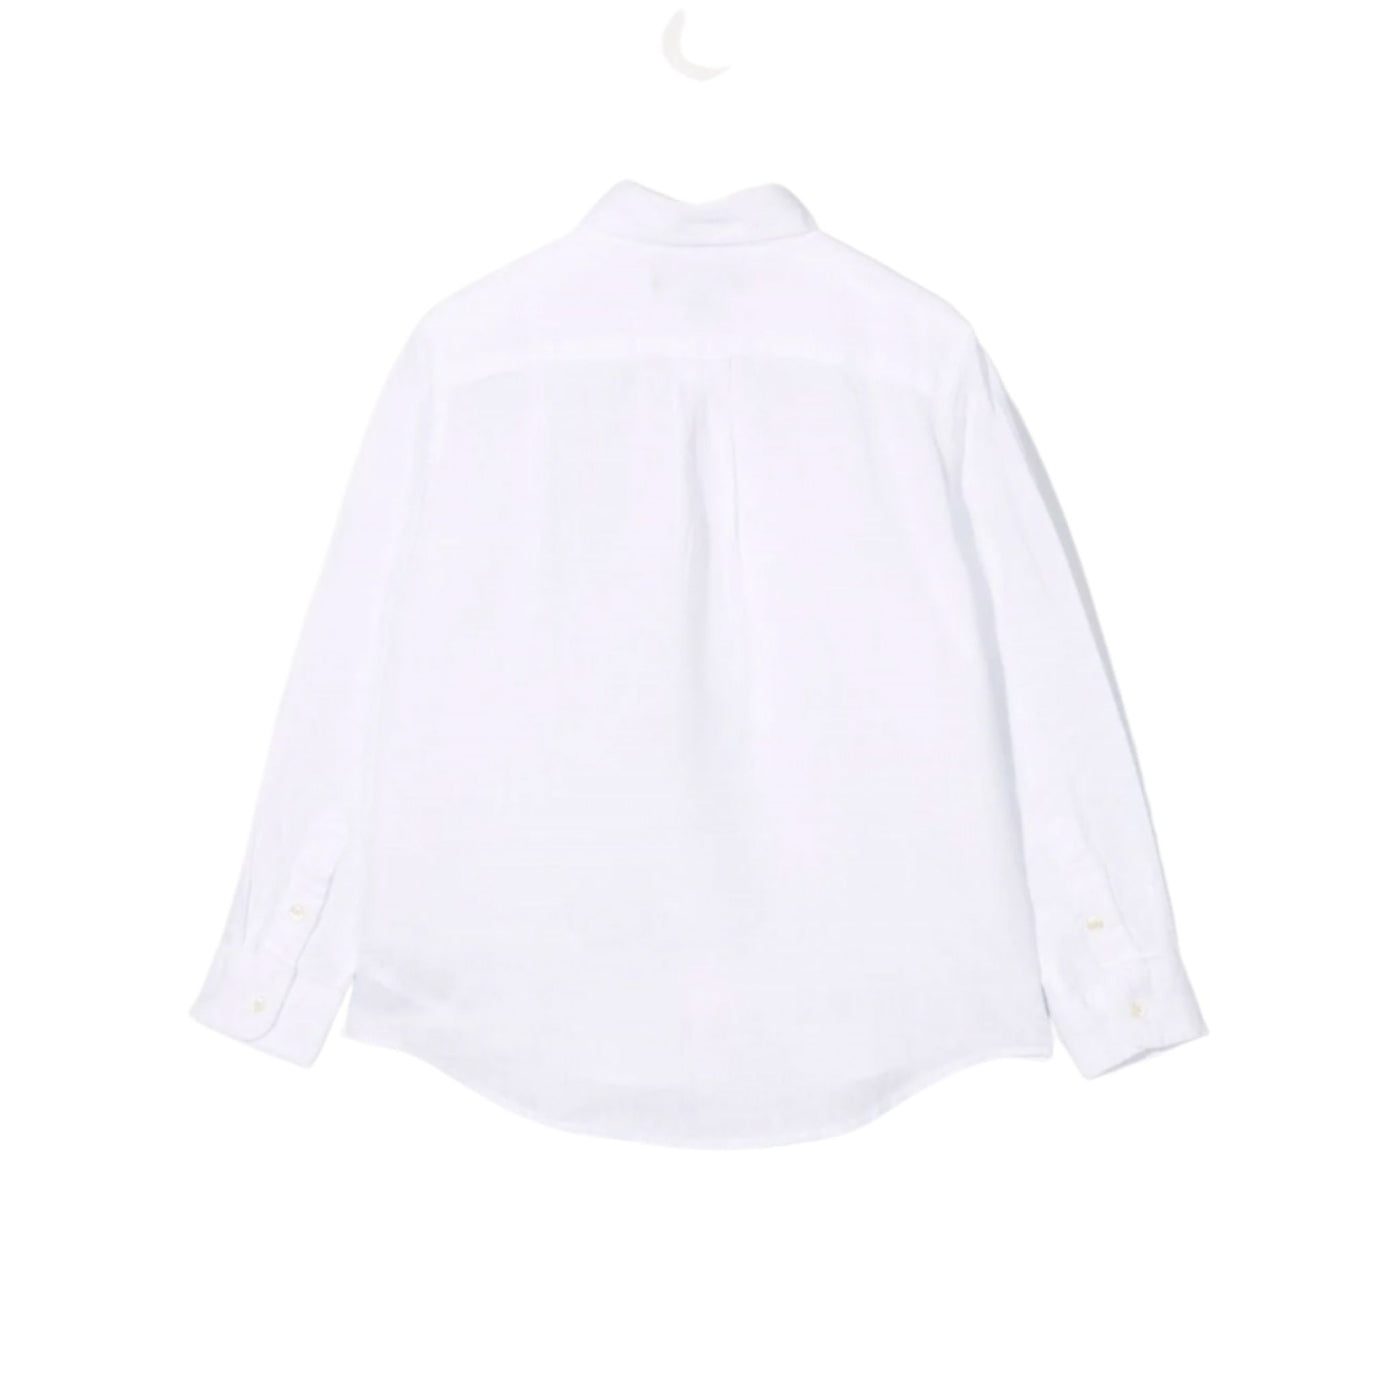 Camicia Bambino bianca Polo Ralph Lauren vista retro